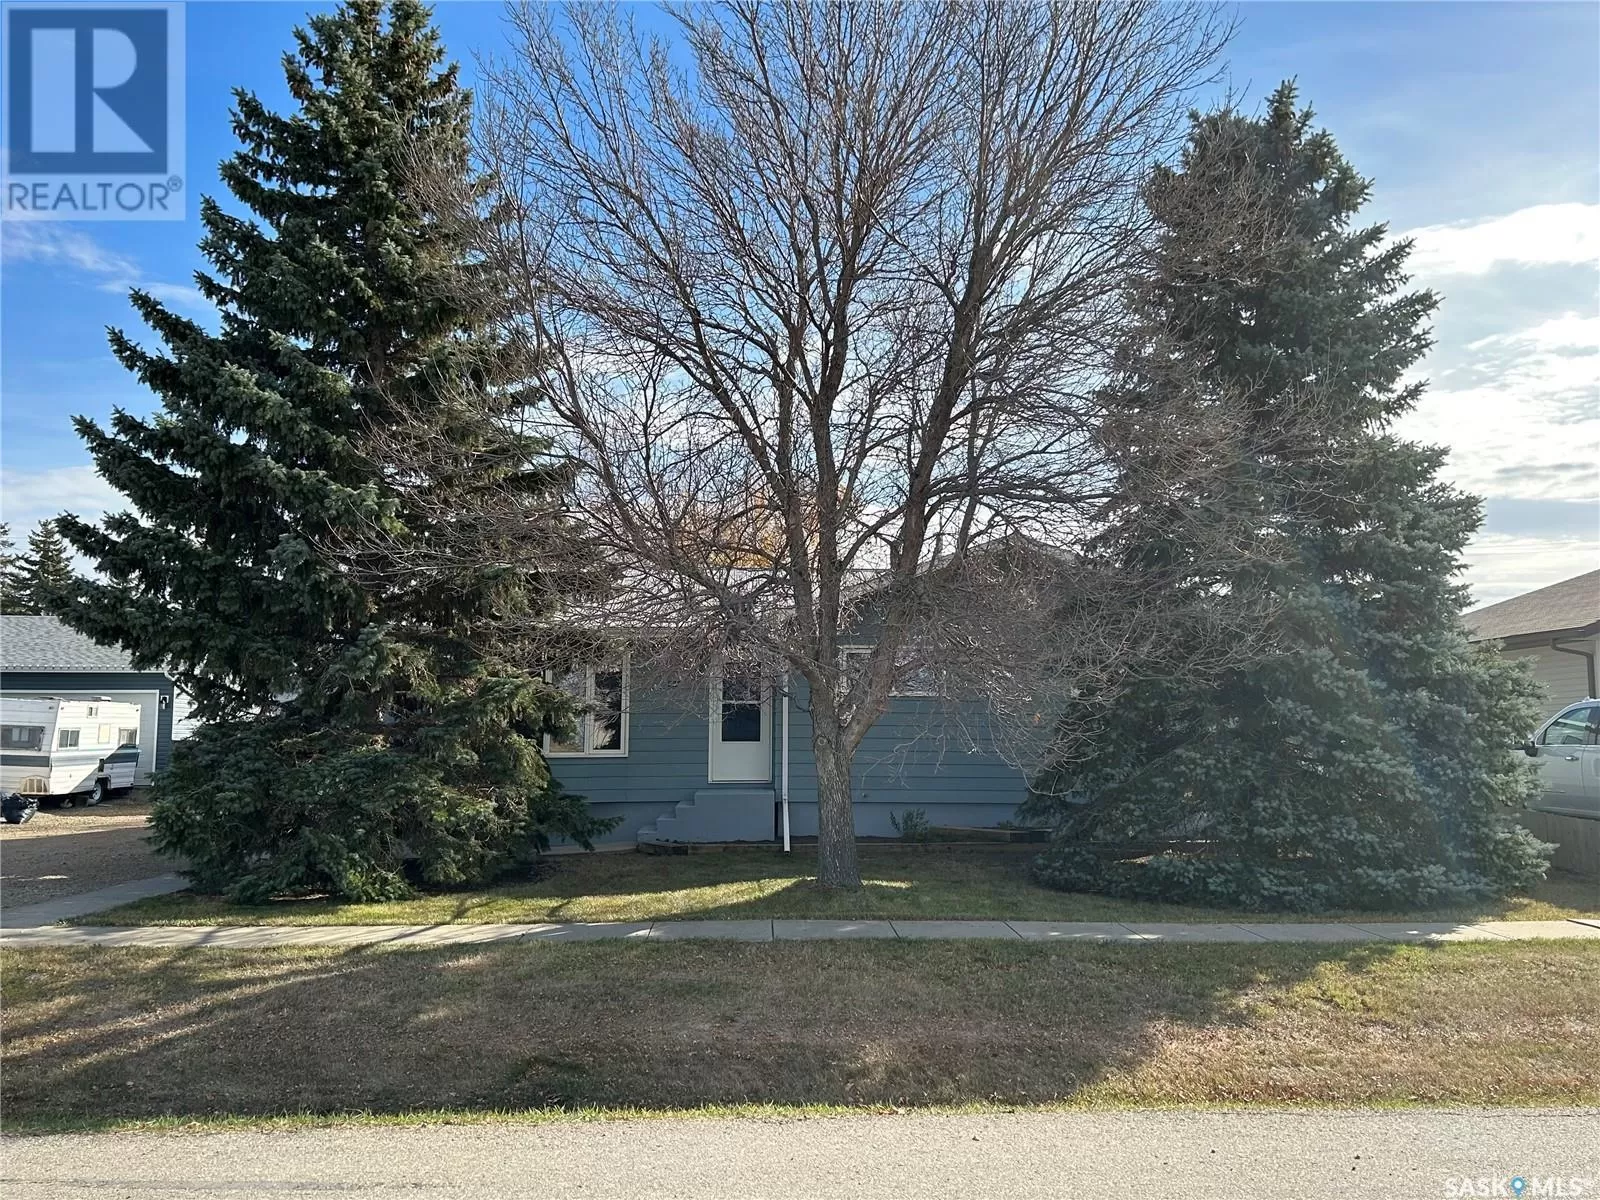 House for rent: 222 Clover Street, Yellow Grass, Saskatchewan S0G 5J0